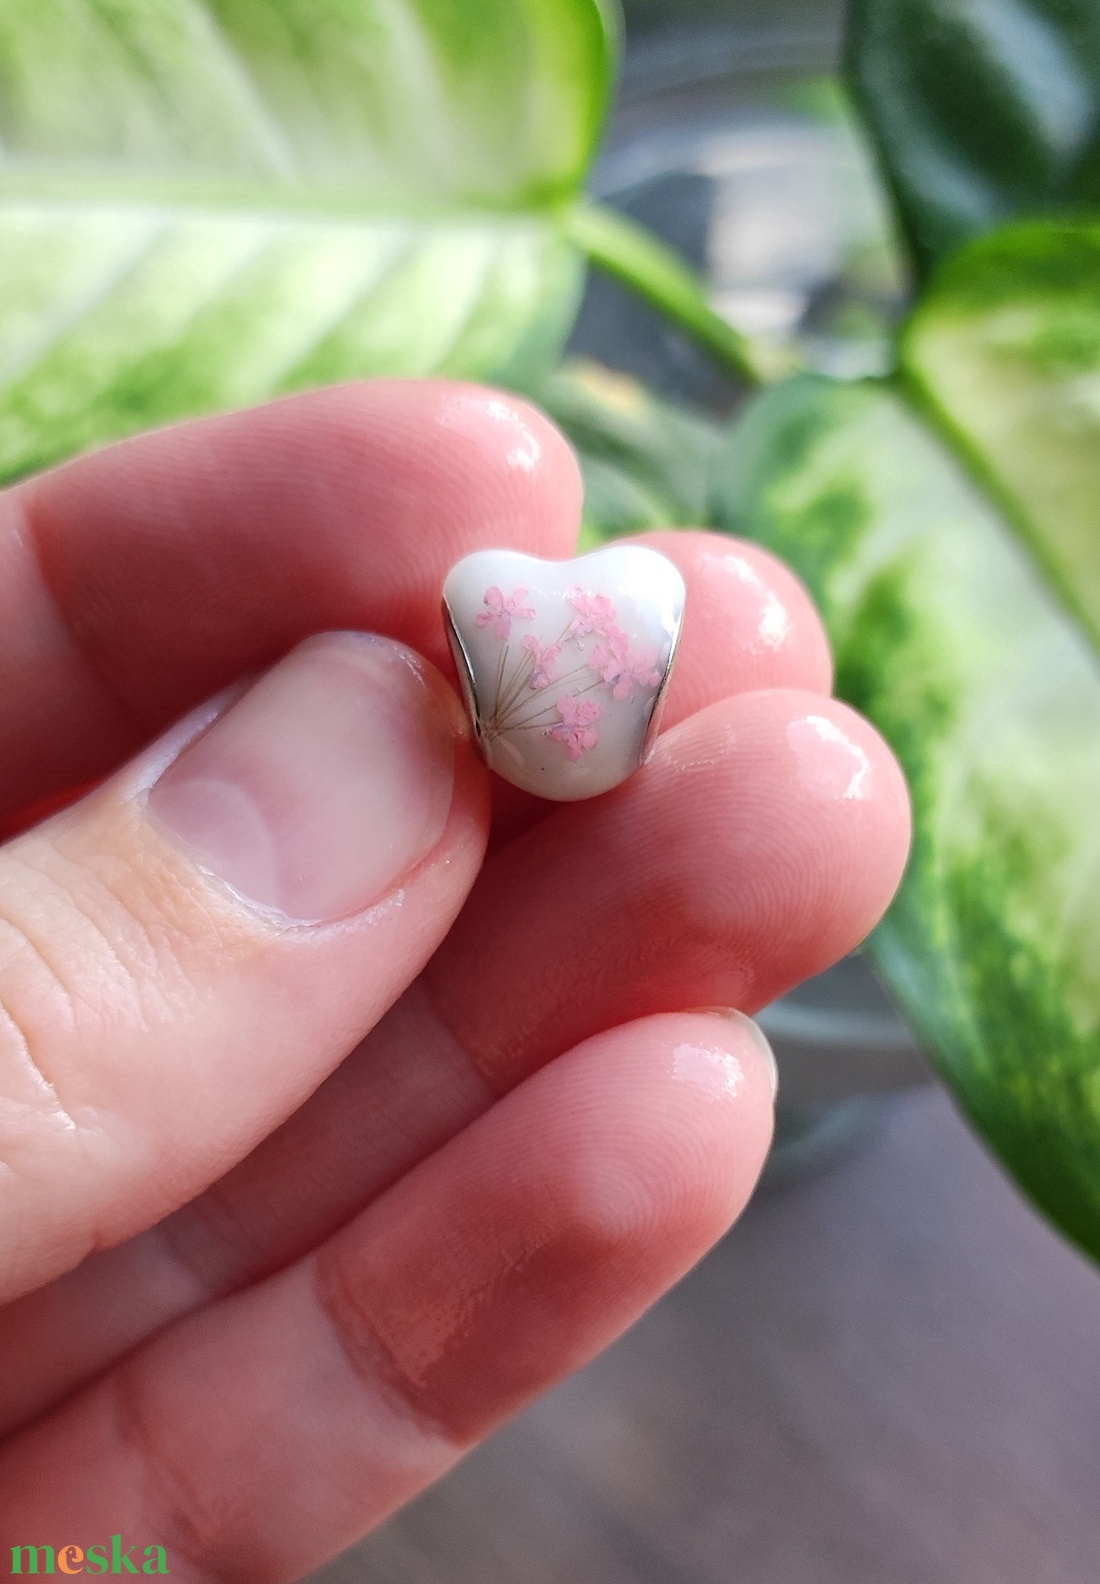 Pandora típusú szív gyöngy babahajjal, anyatejjel, esküvői virággal KICSI - ékszer - karkötő - bogyós karkötő - Meska.hu